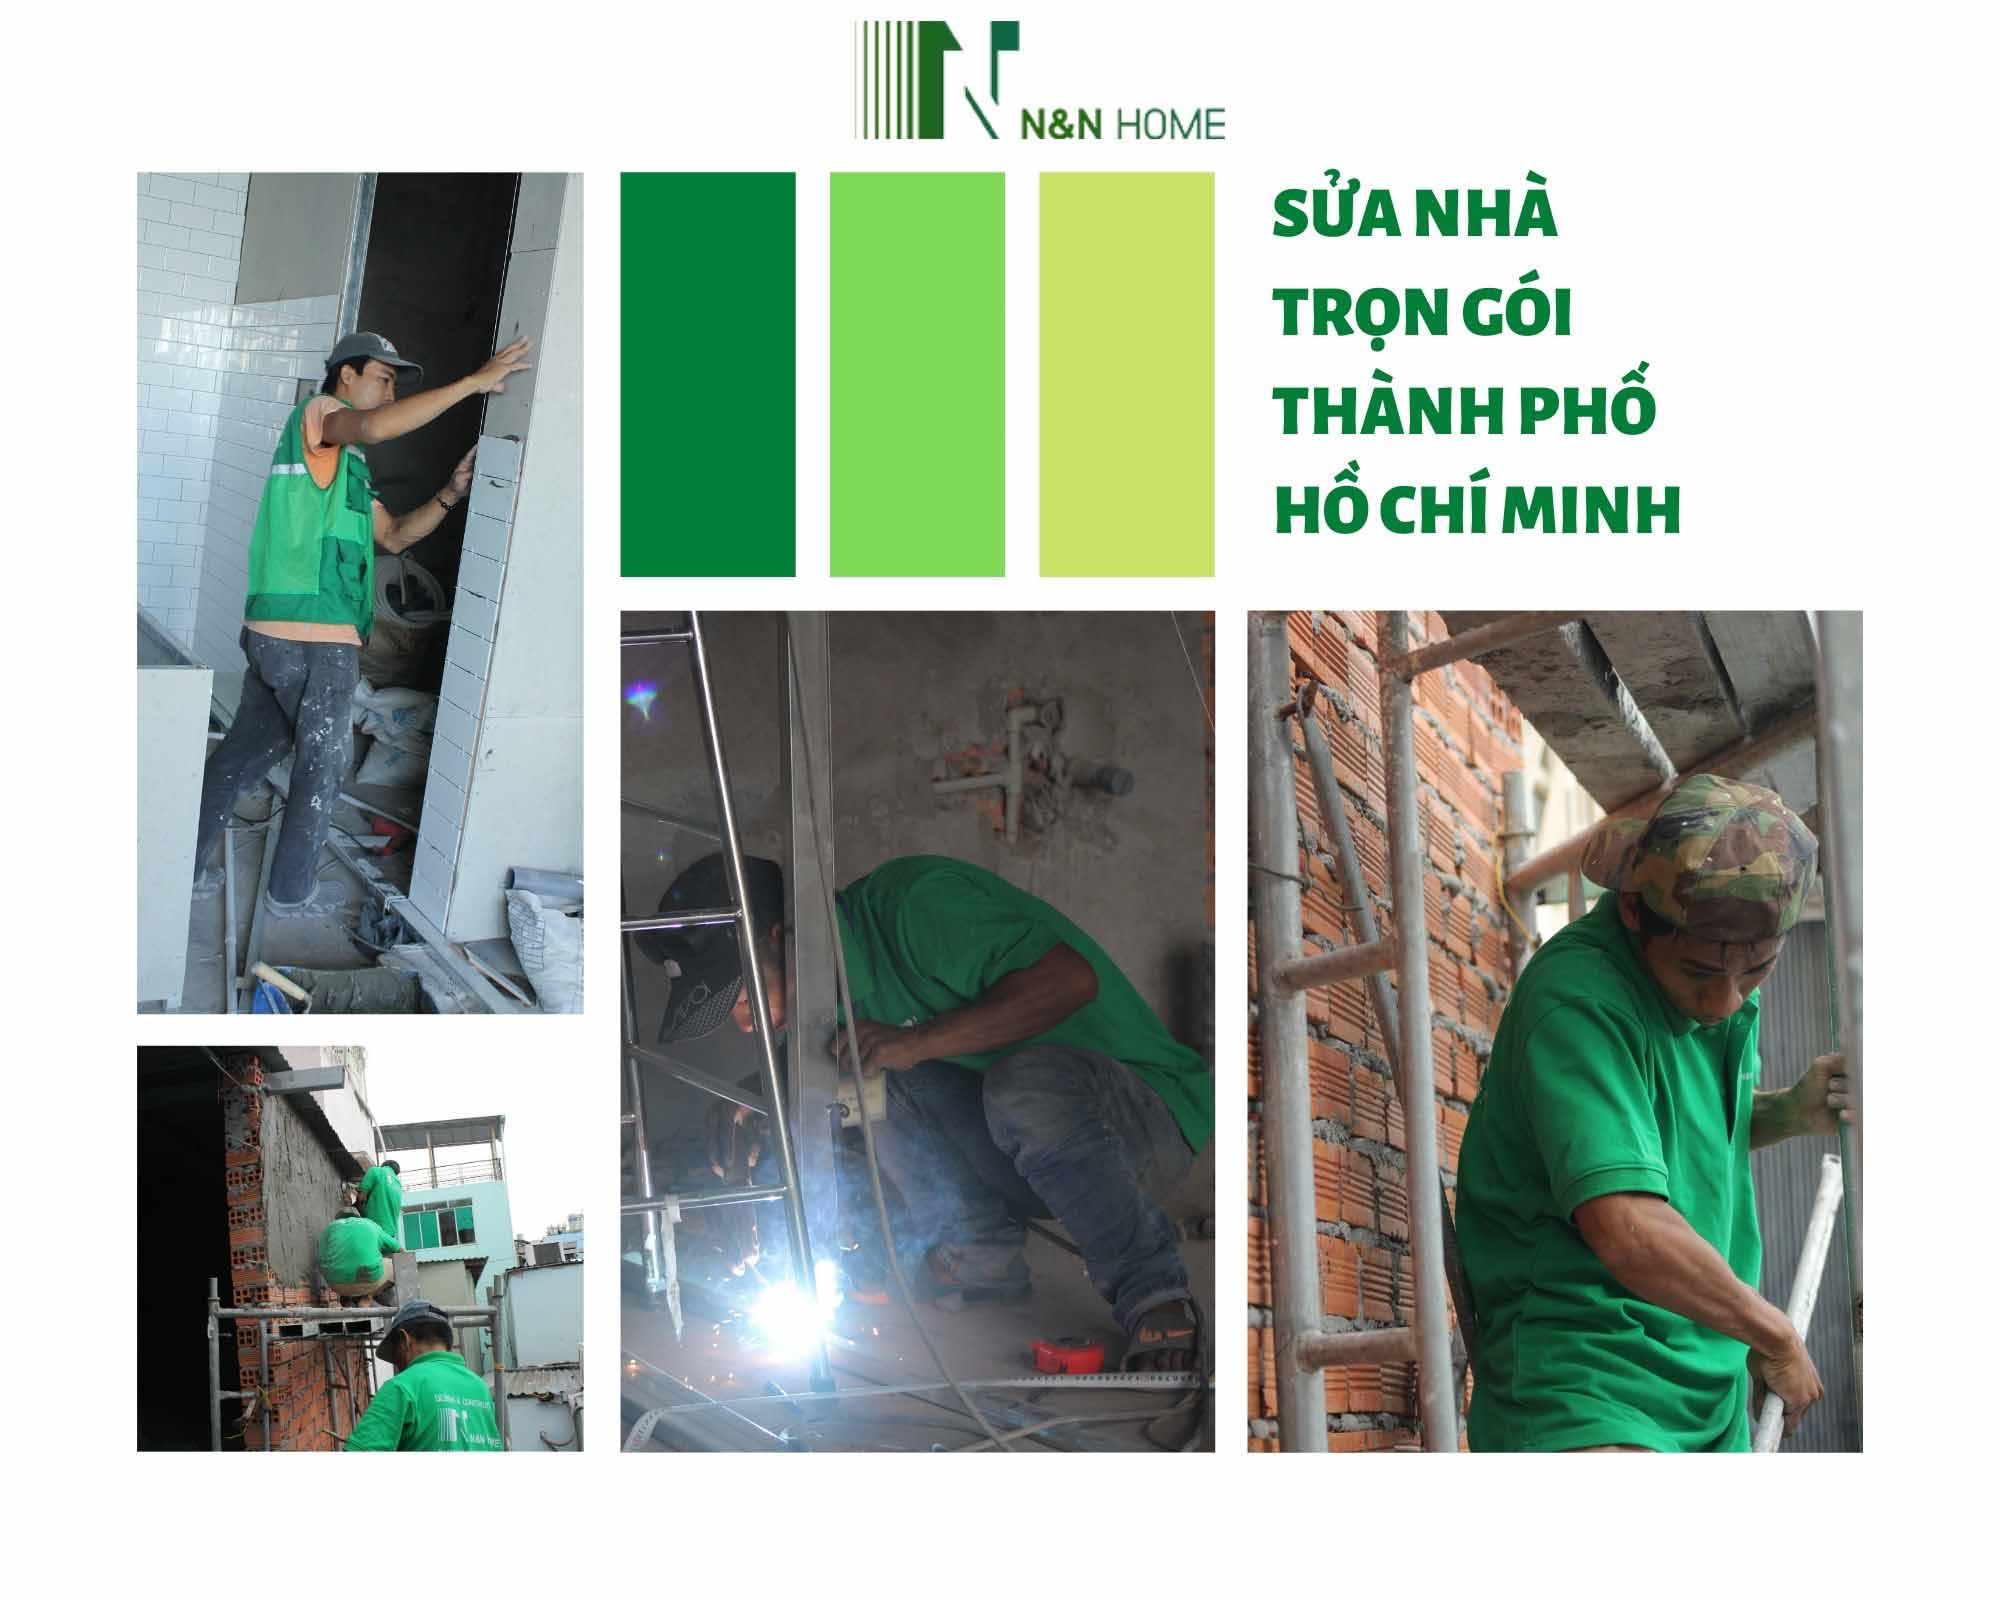 Sửa nhà trọn gói Thành phố Hồ Chí Minh